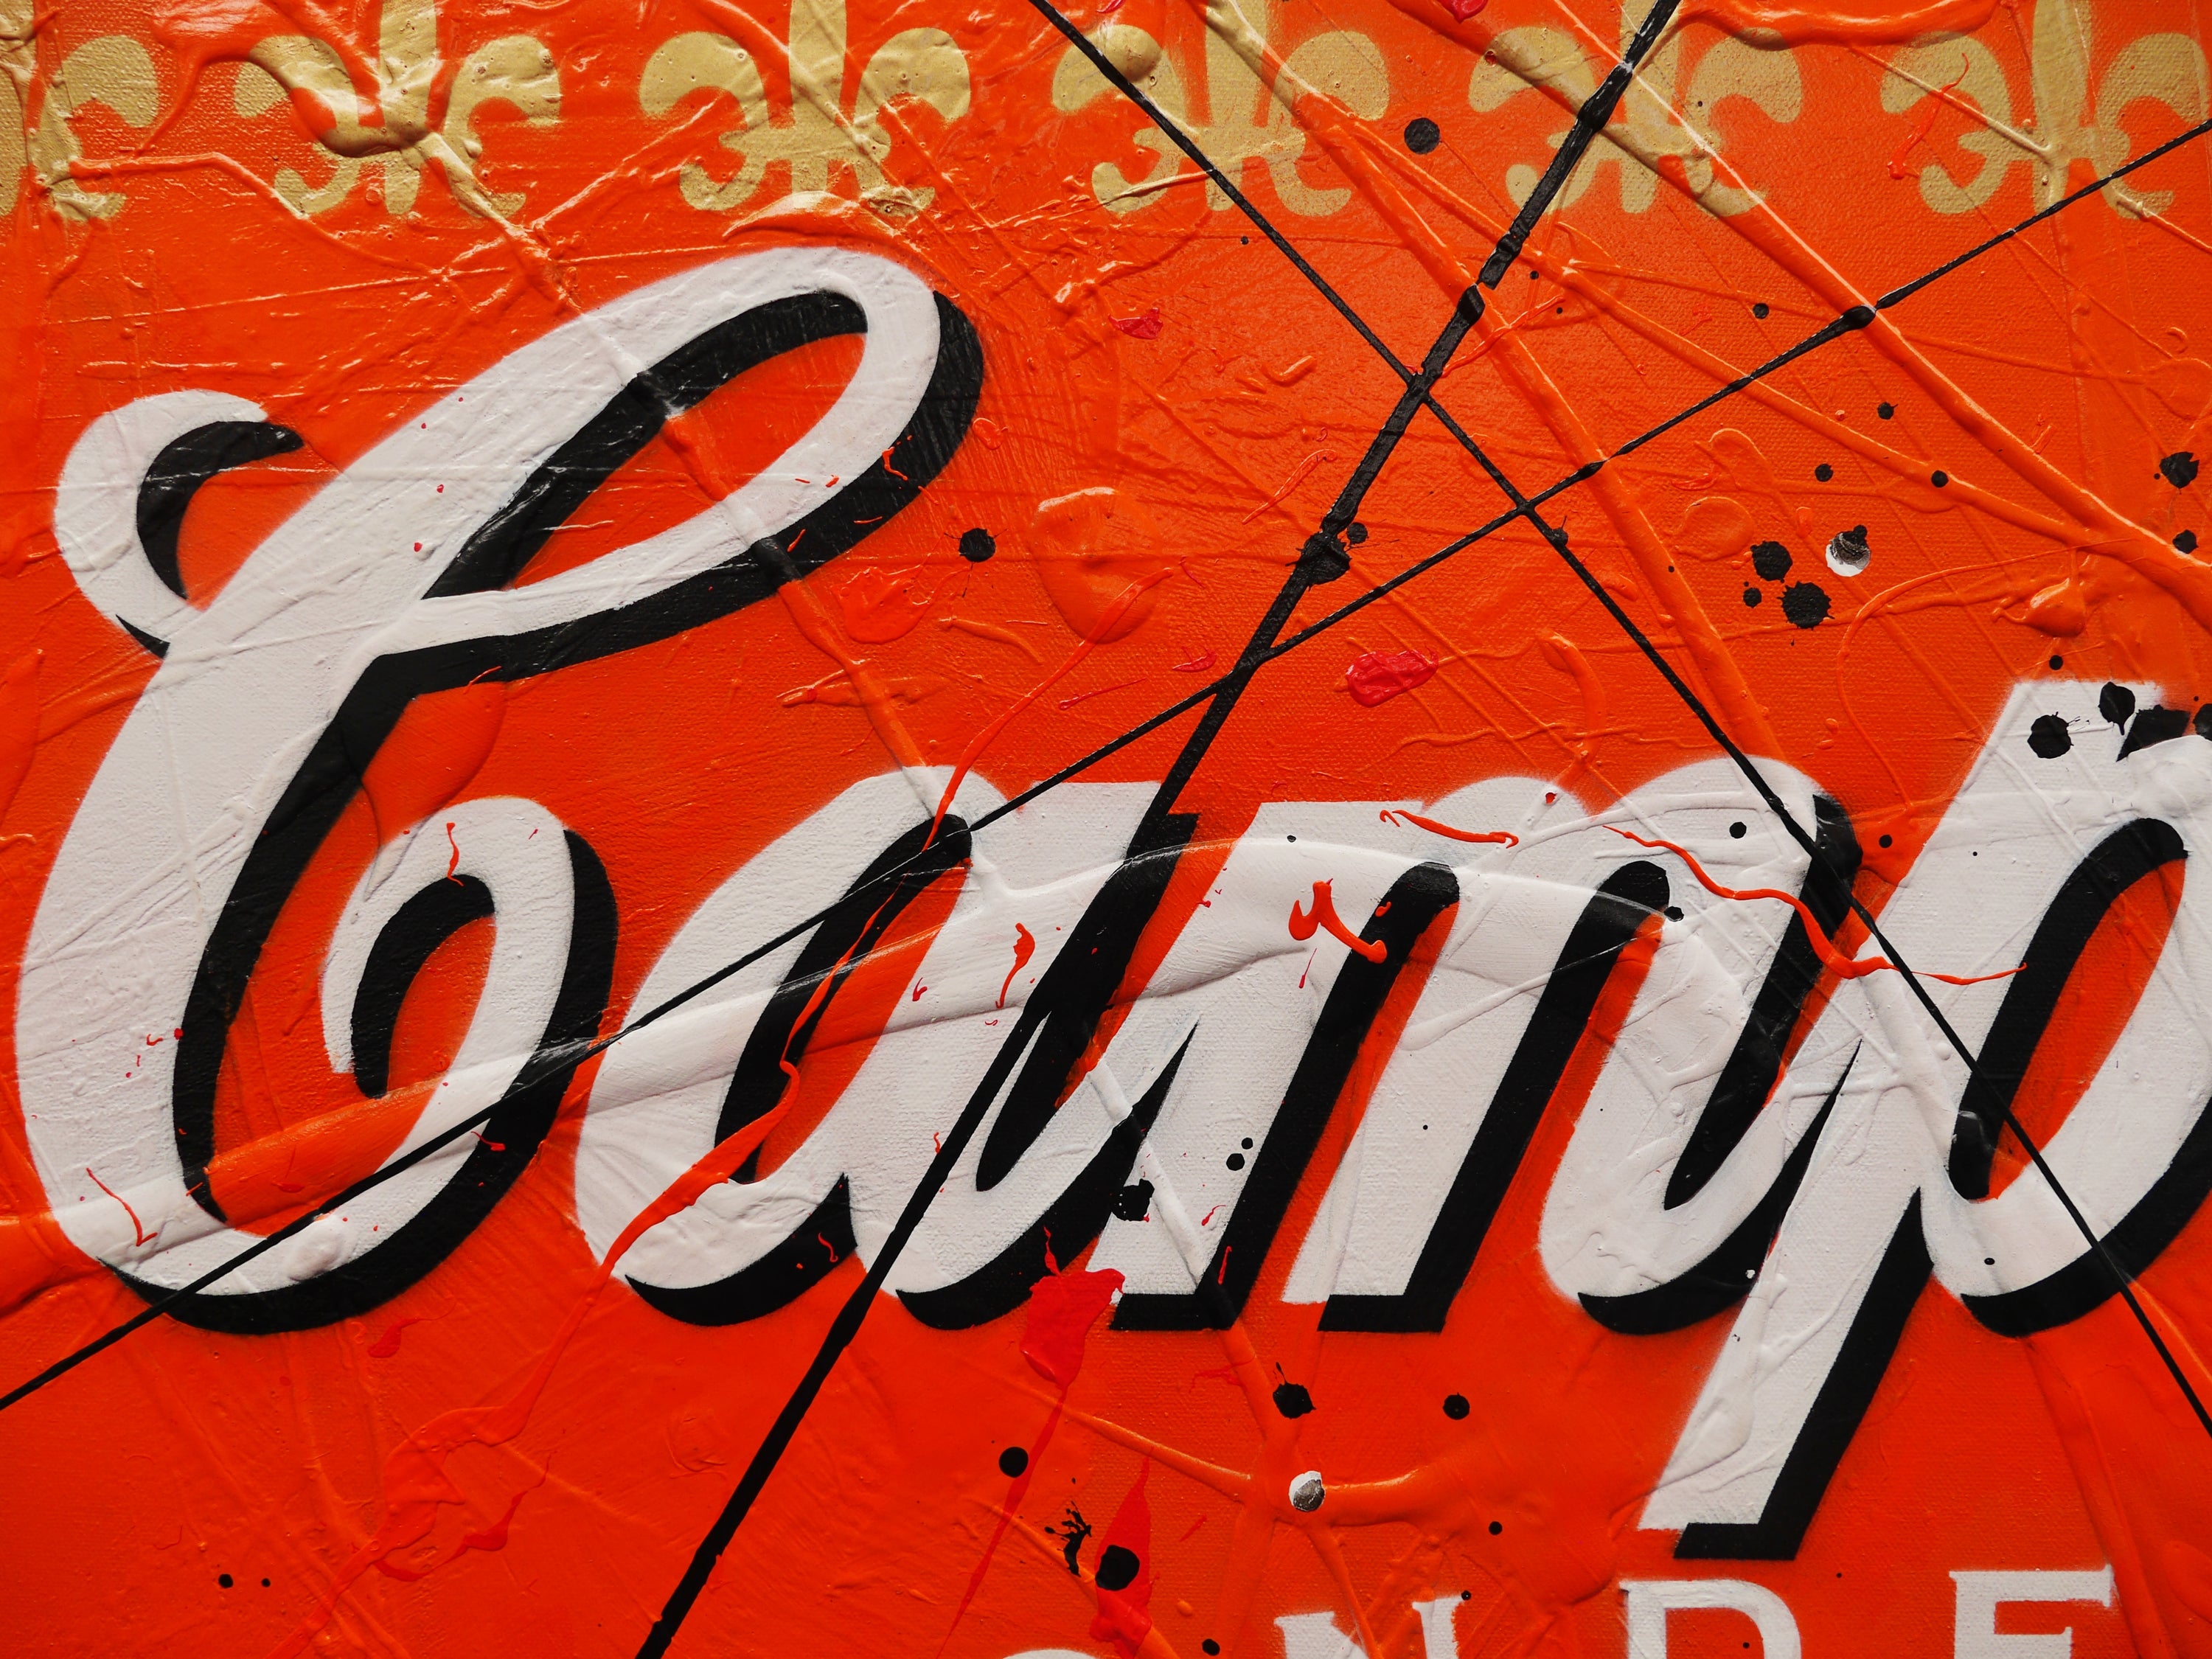 Pumpkin Mao 140cm x 100cm Campbell's Soup Textured Urban Pop Art Painting (SOLD)